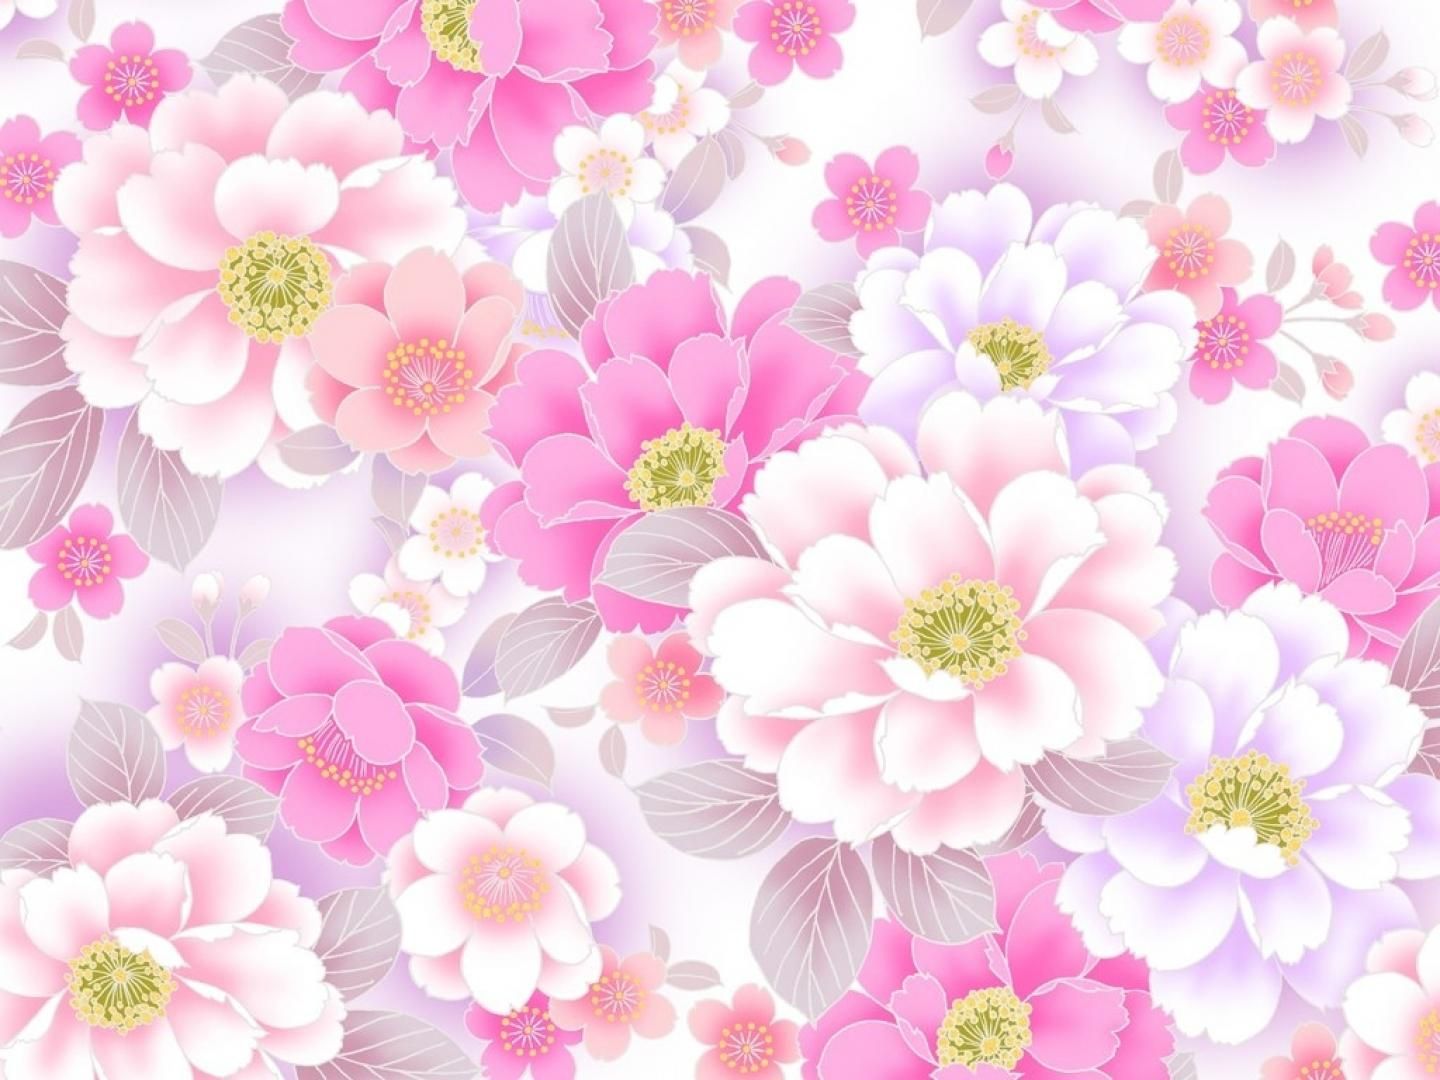 wallpaper de flores,petal,flower,pink,plant,floral design